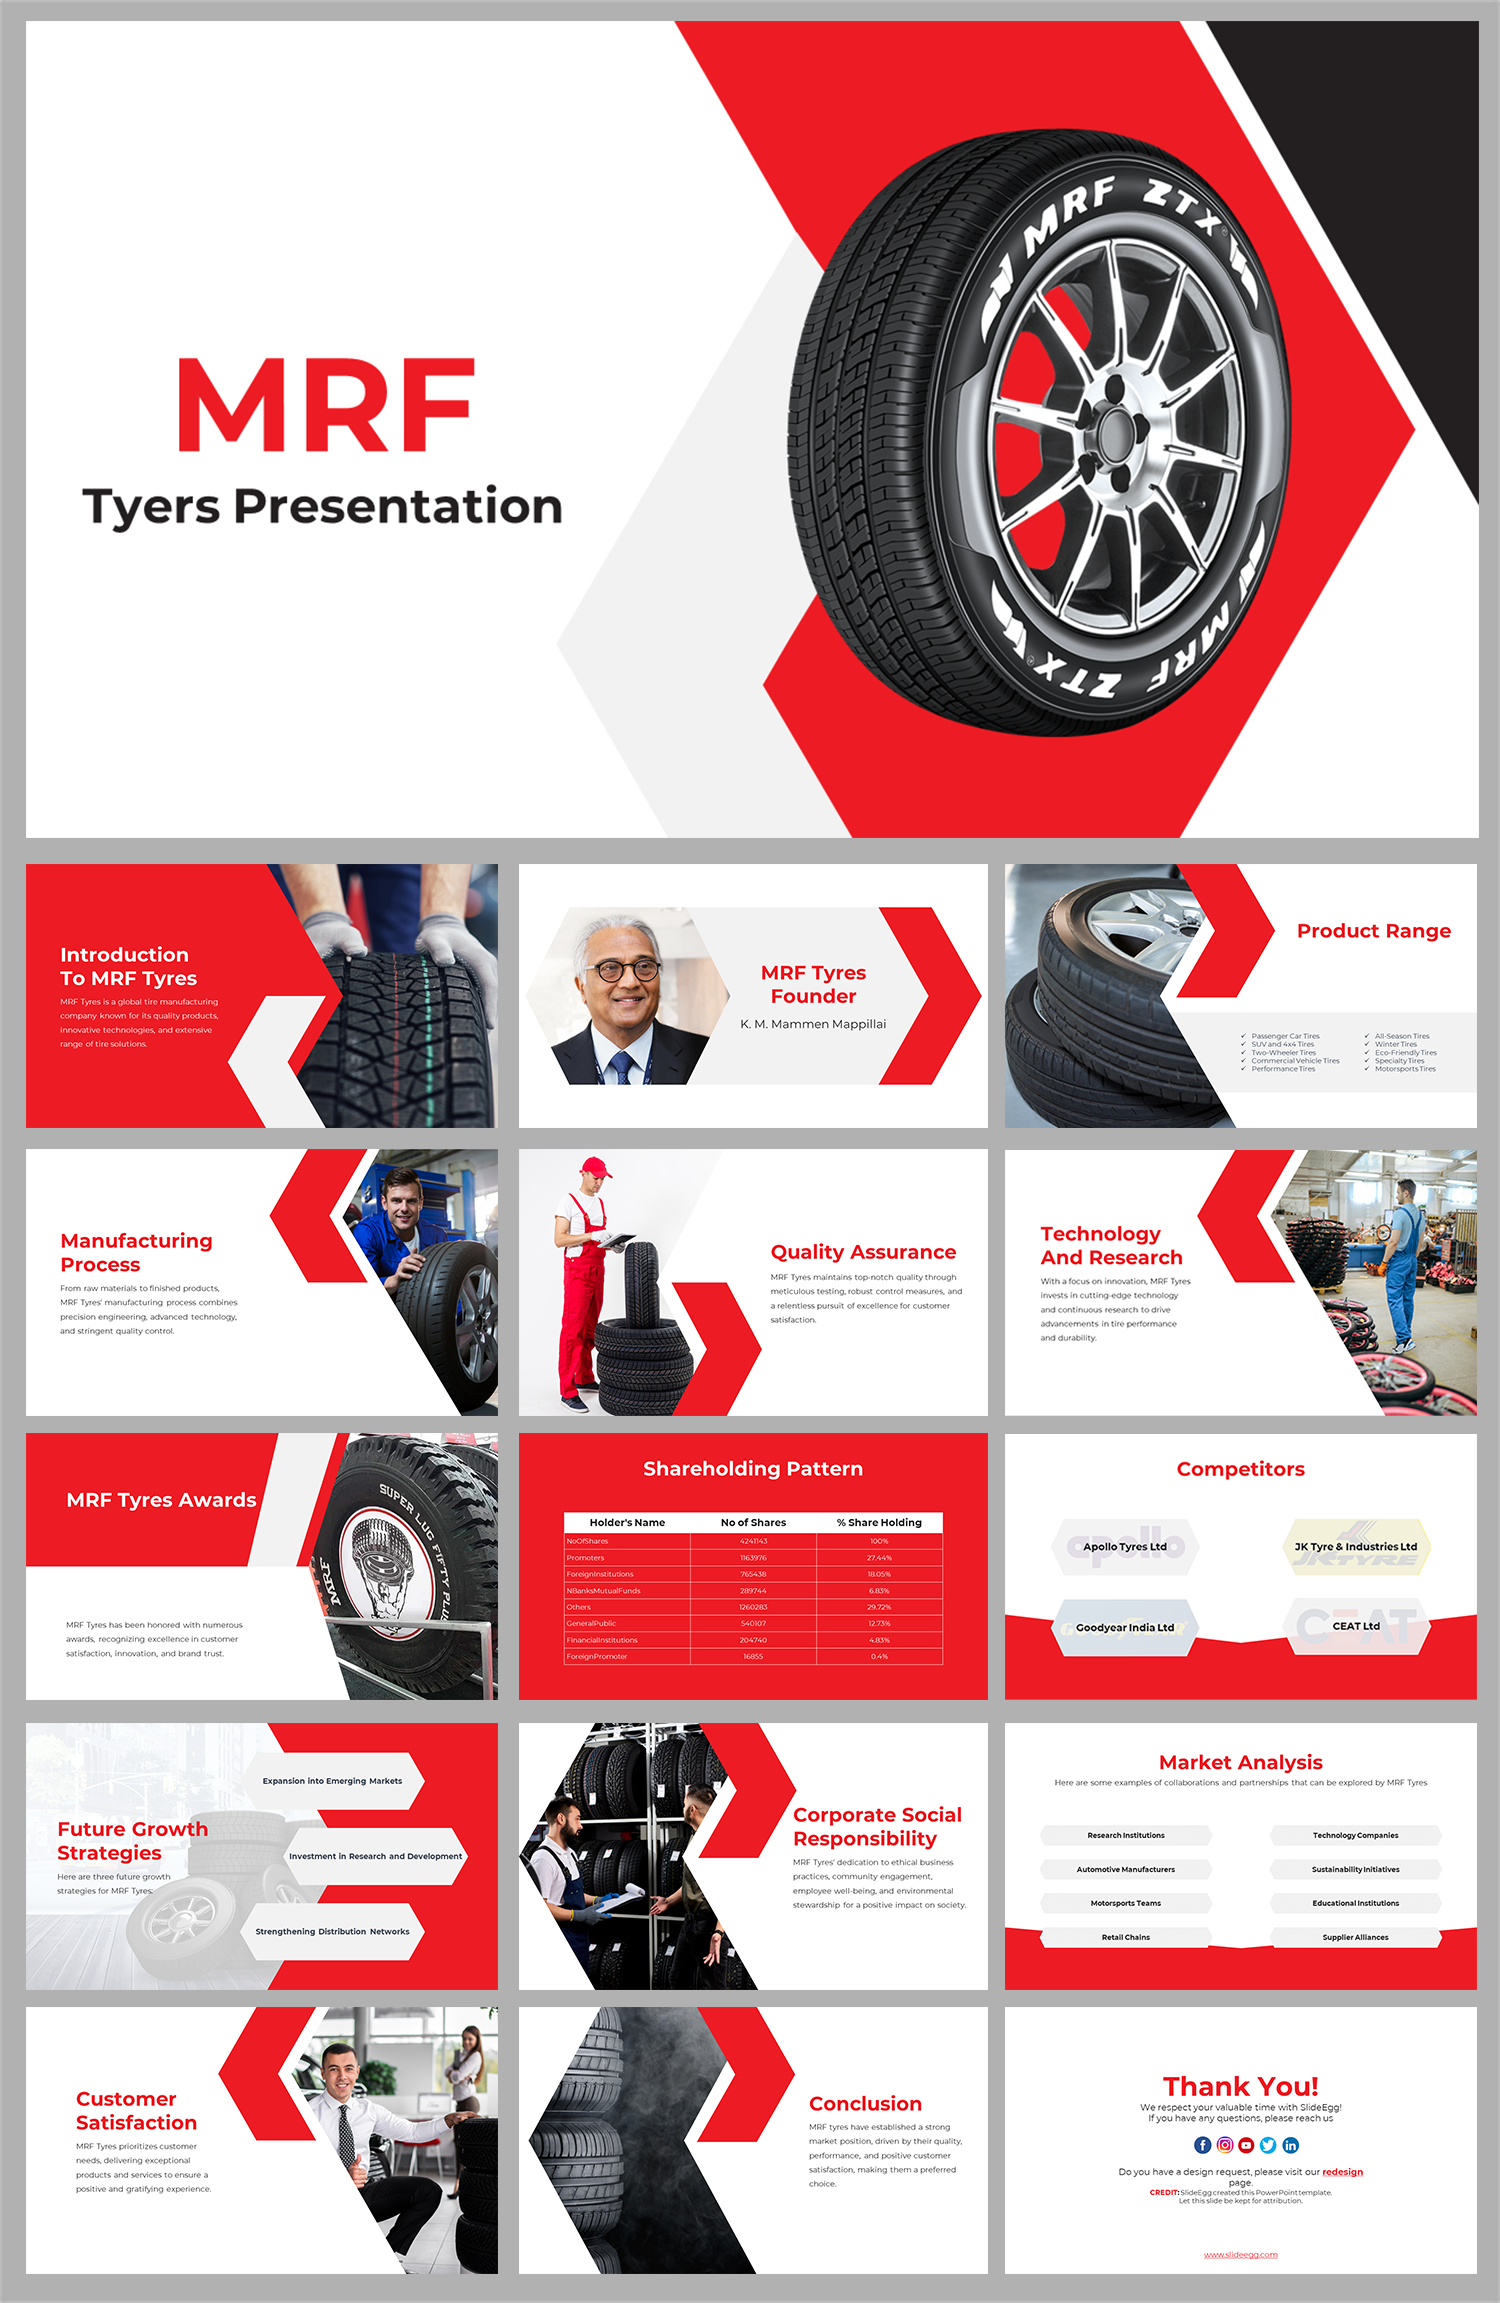 MRF Tyres (@MRFWorldwide) / X